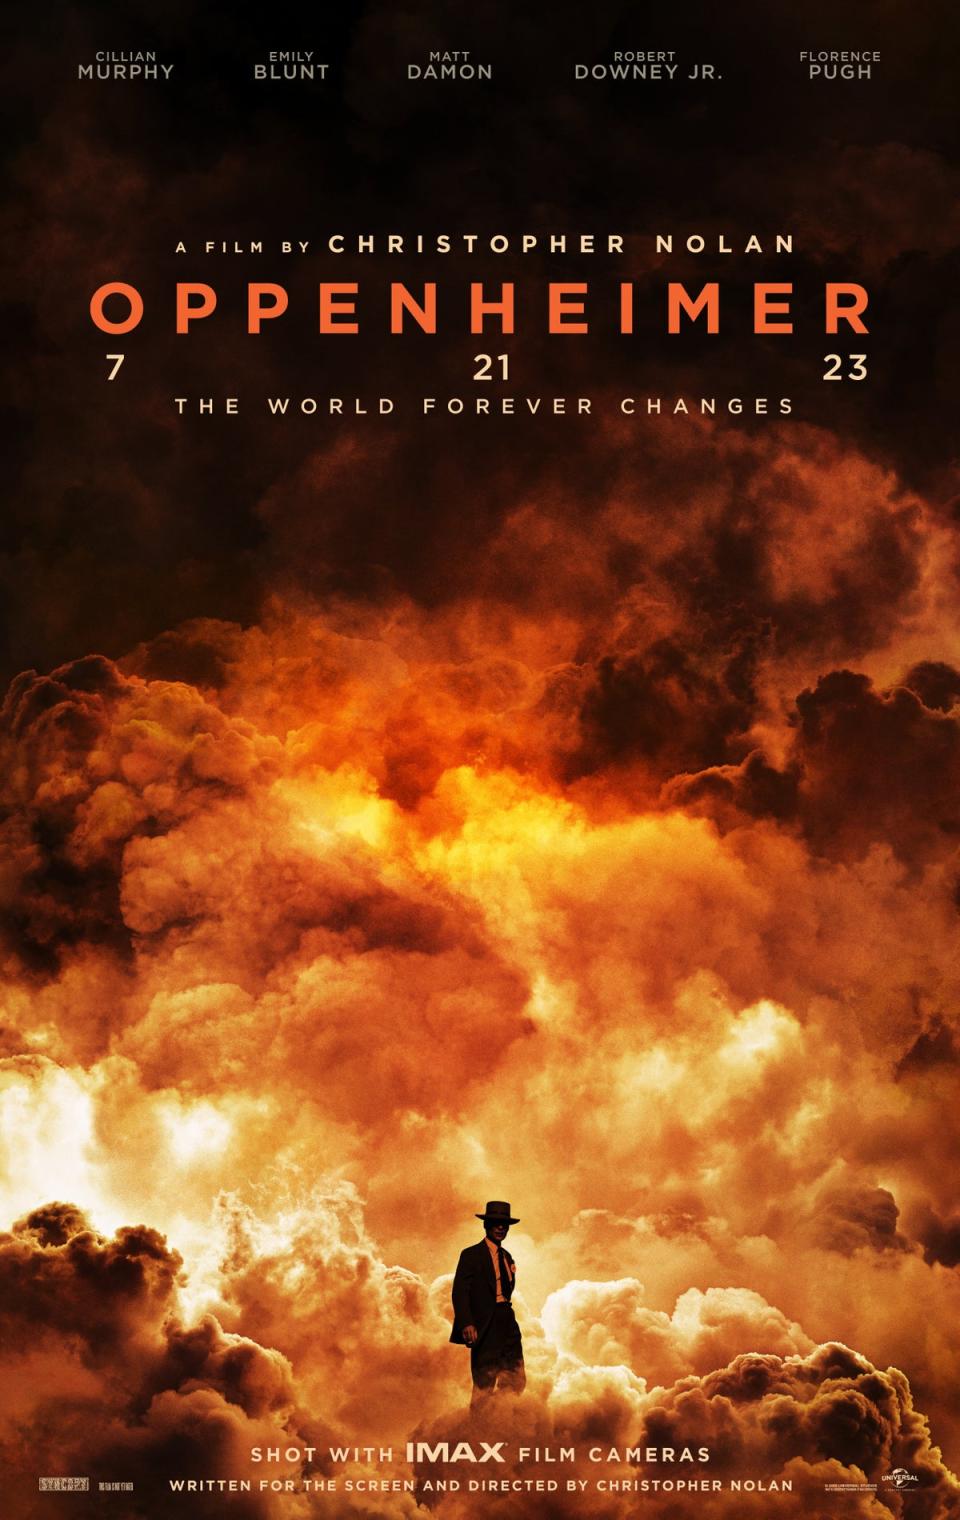 The new poster for ‘Oppenheimer’ (Universal Studios)